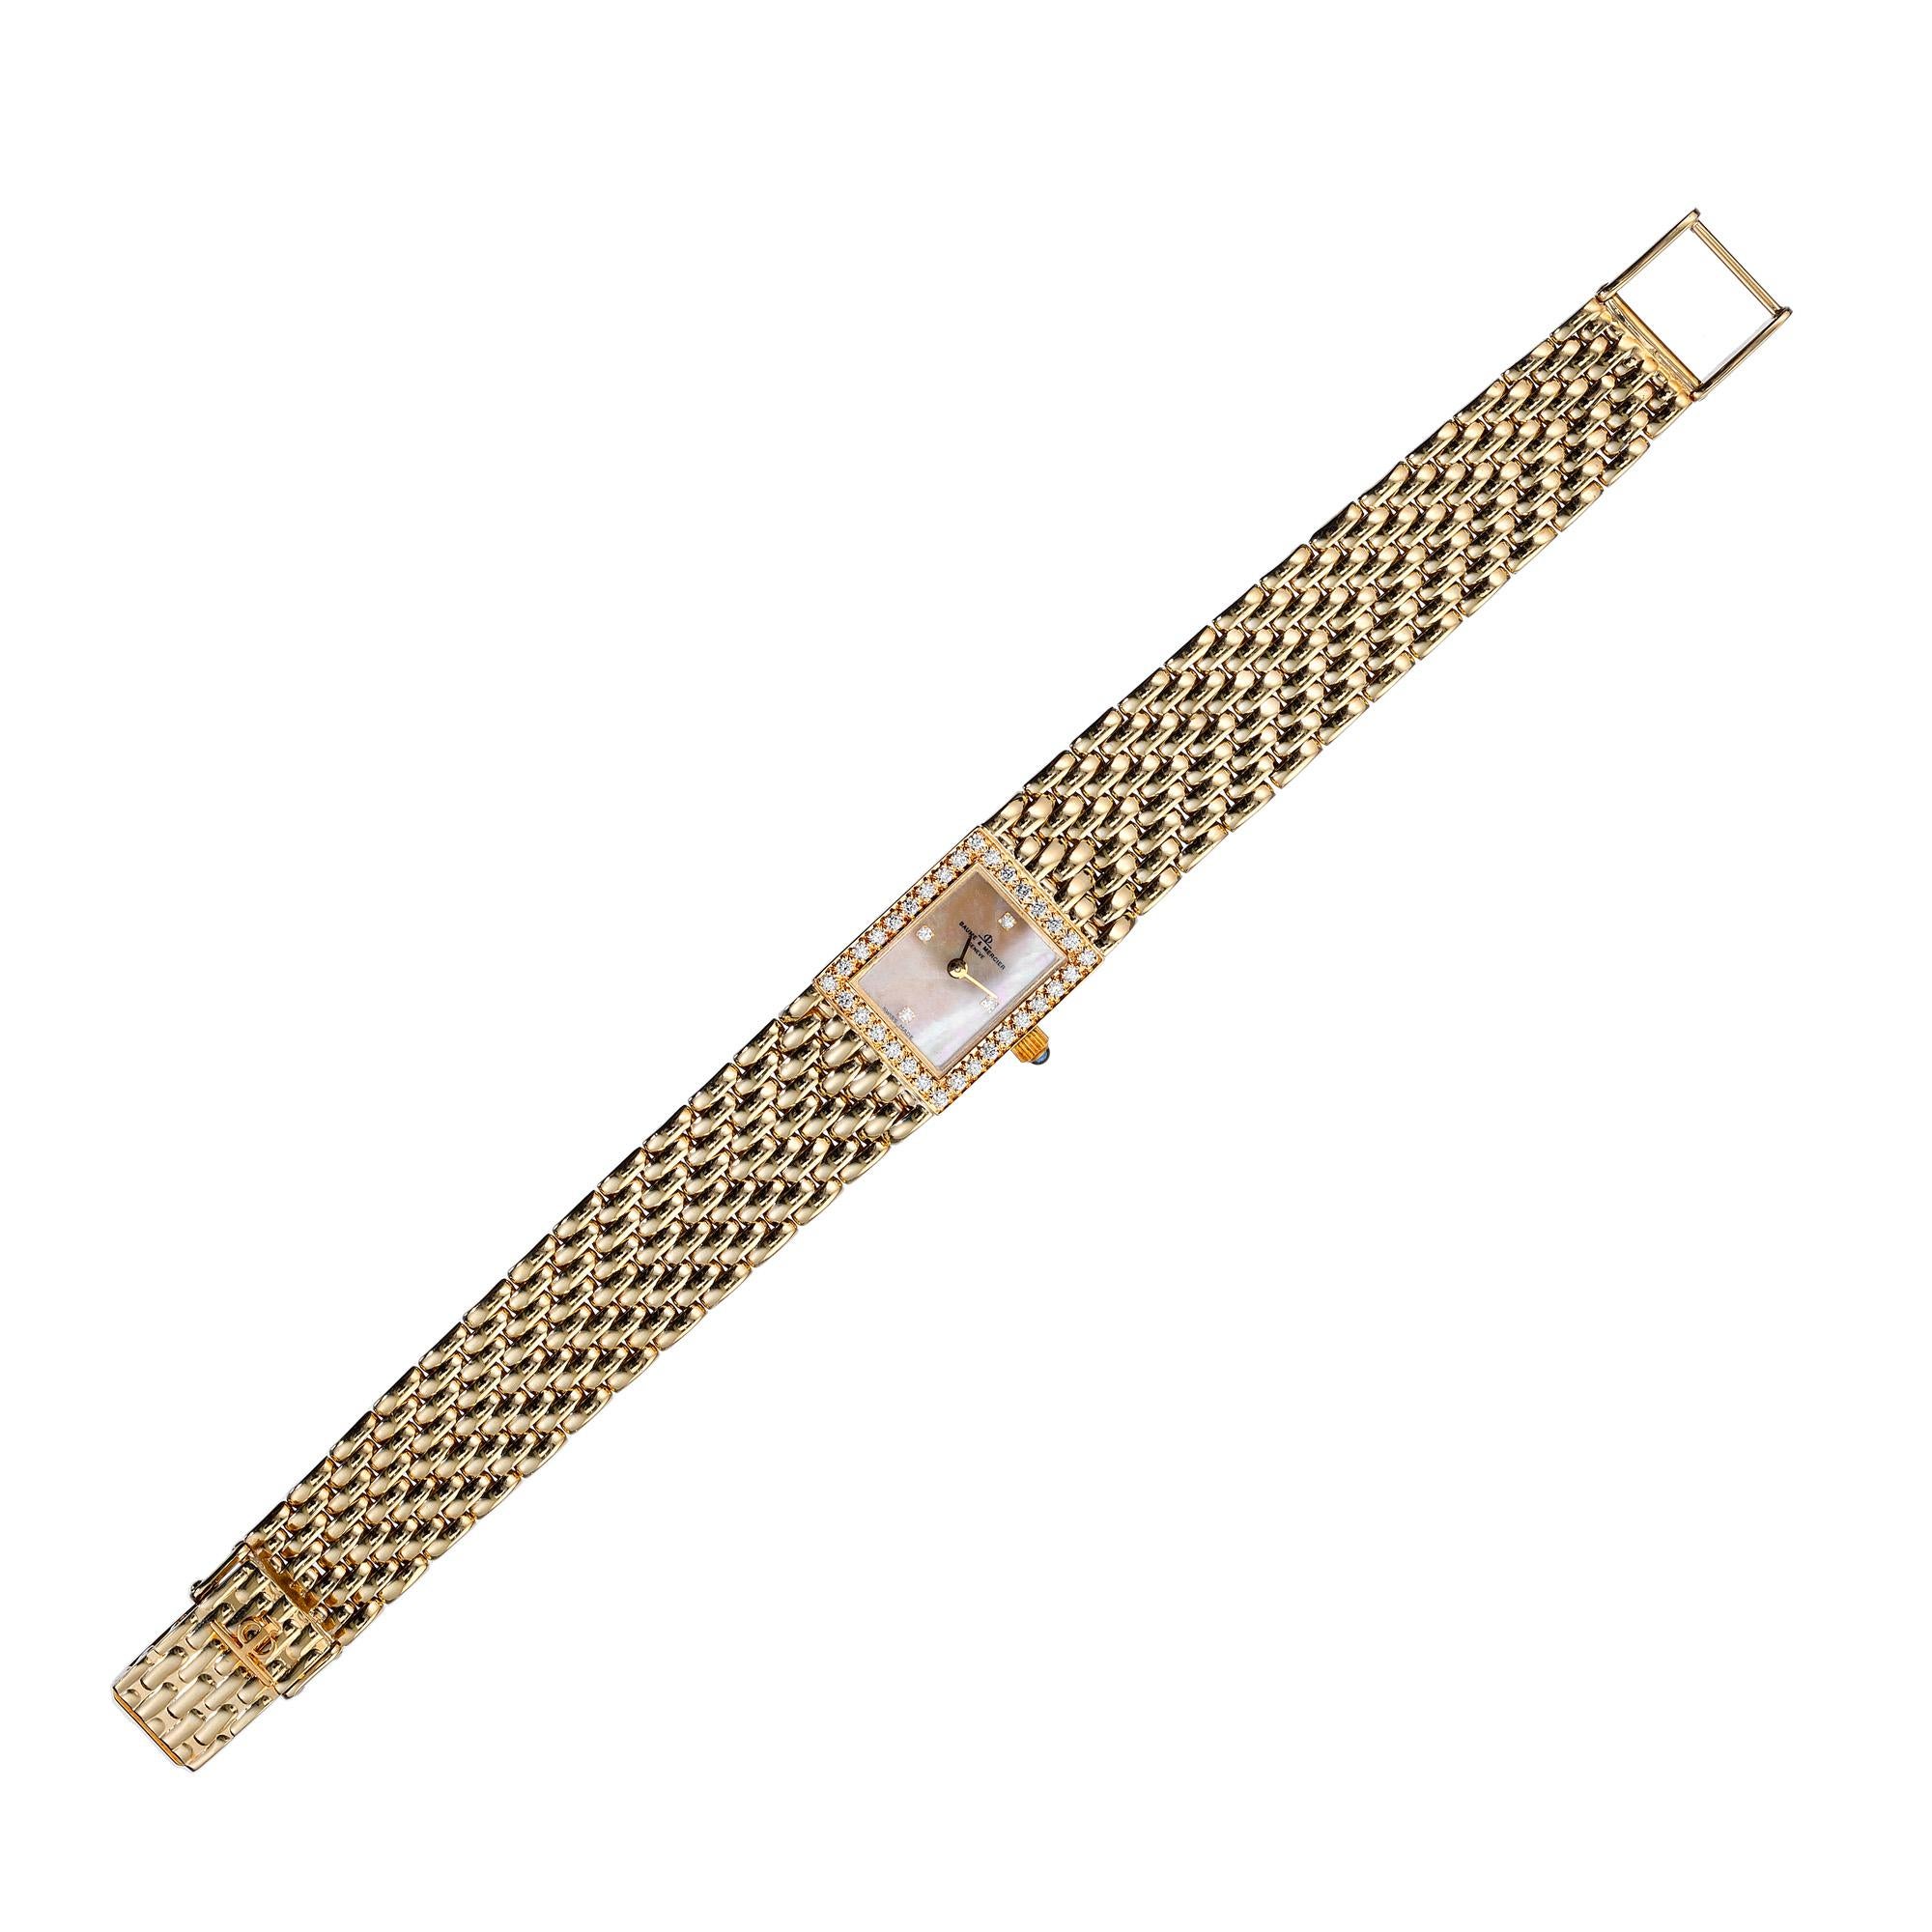  Baume & Mercier .17 Carat Diamond Yellow Gold Ladies Wristwatch Pour femmes 